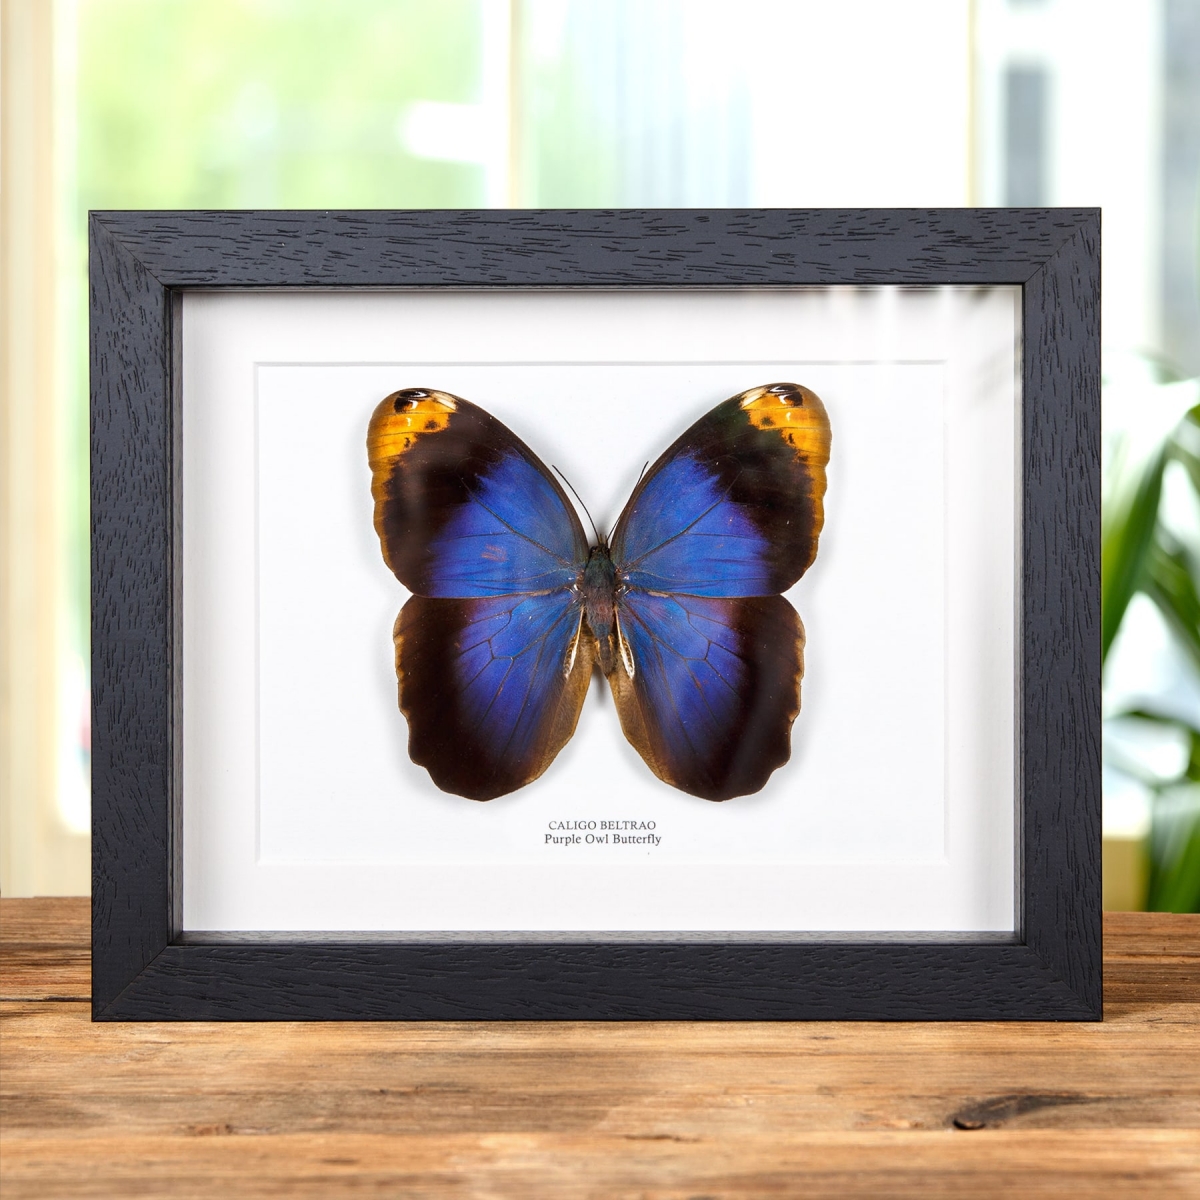 Minibeast Purple Owl Butterfly In Box Frame (Caligo beltrao)